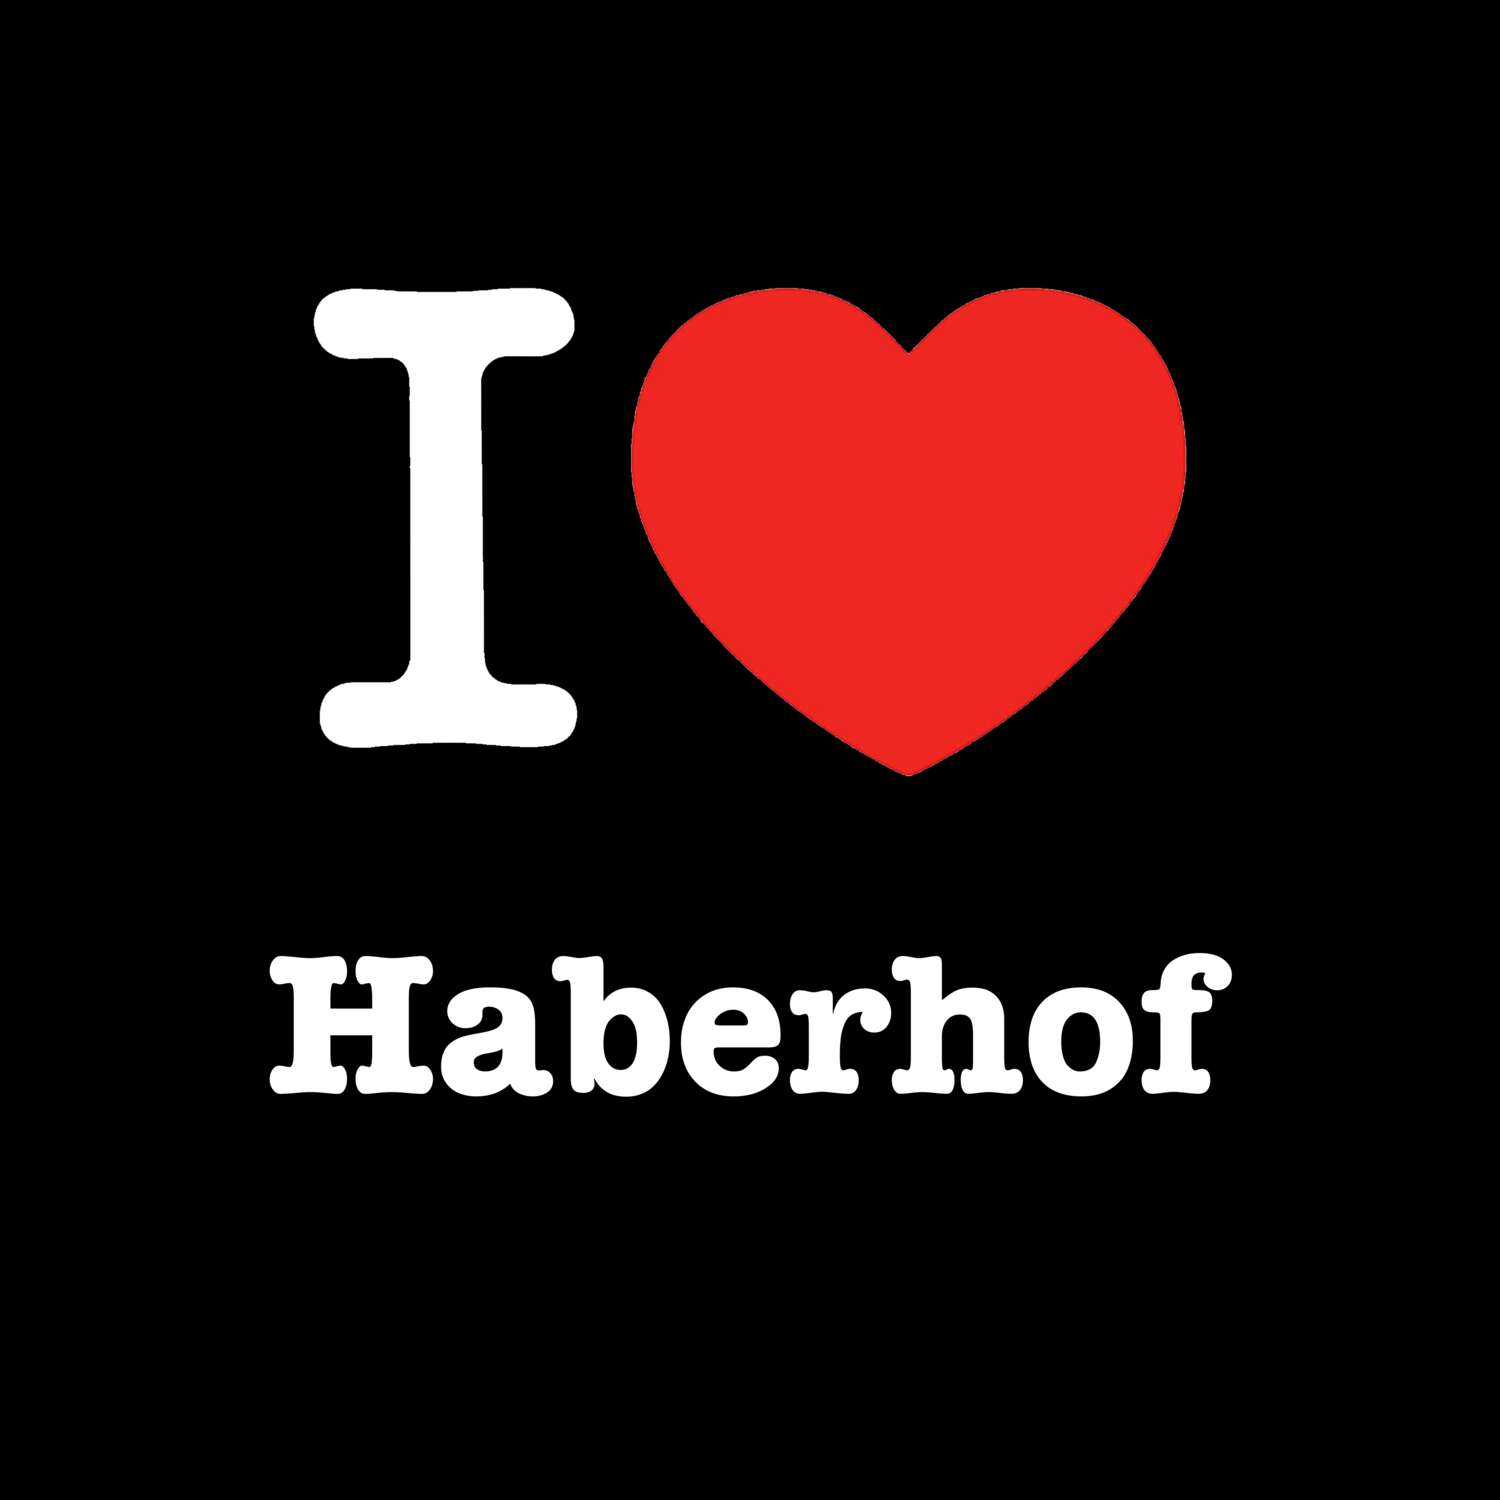 Haberhof T-Shirt »I love«